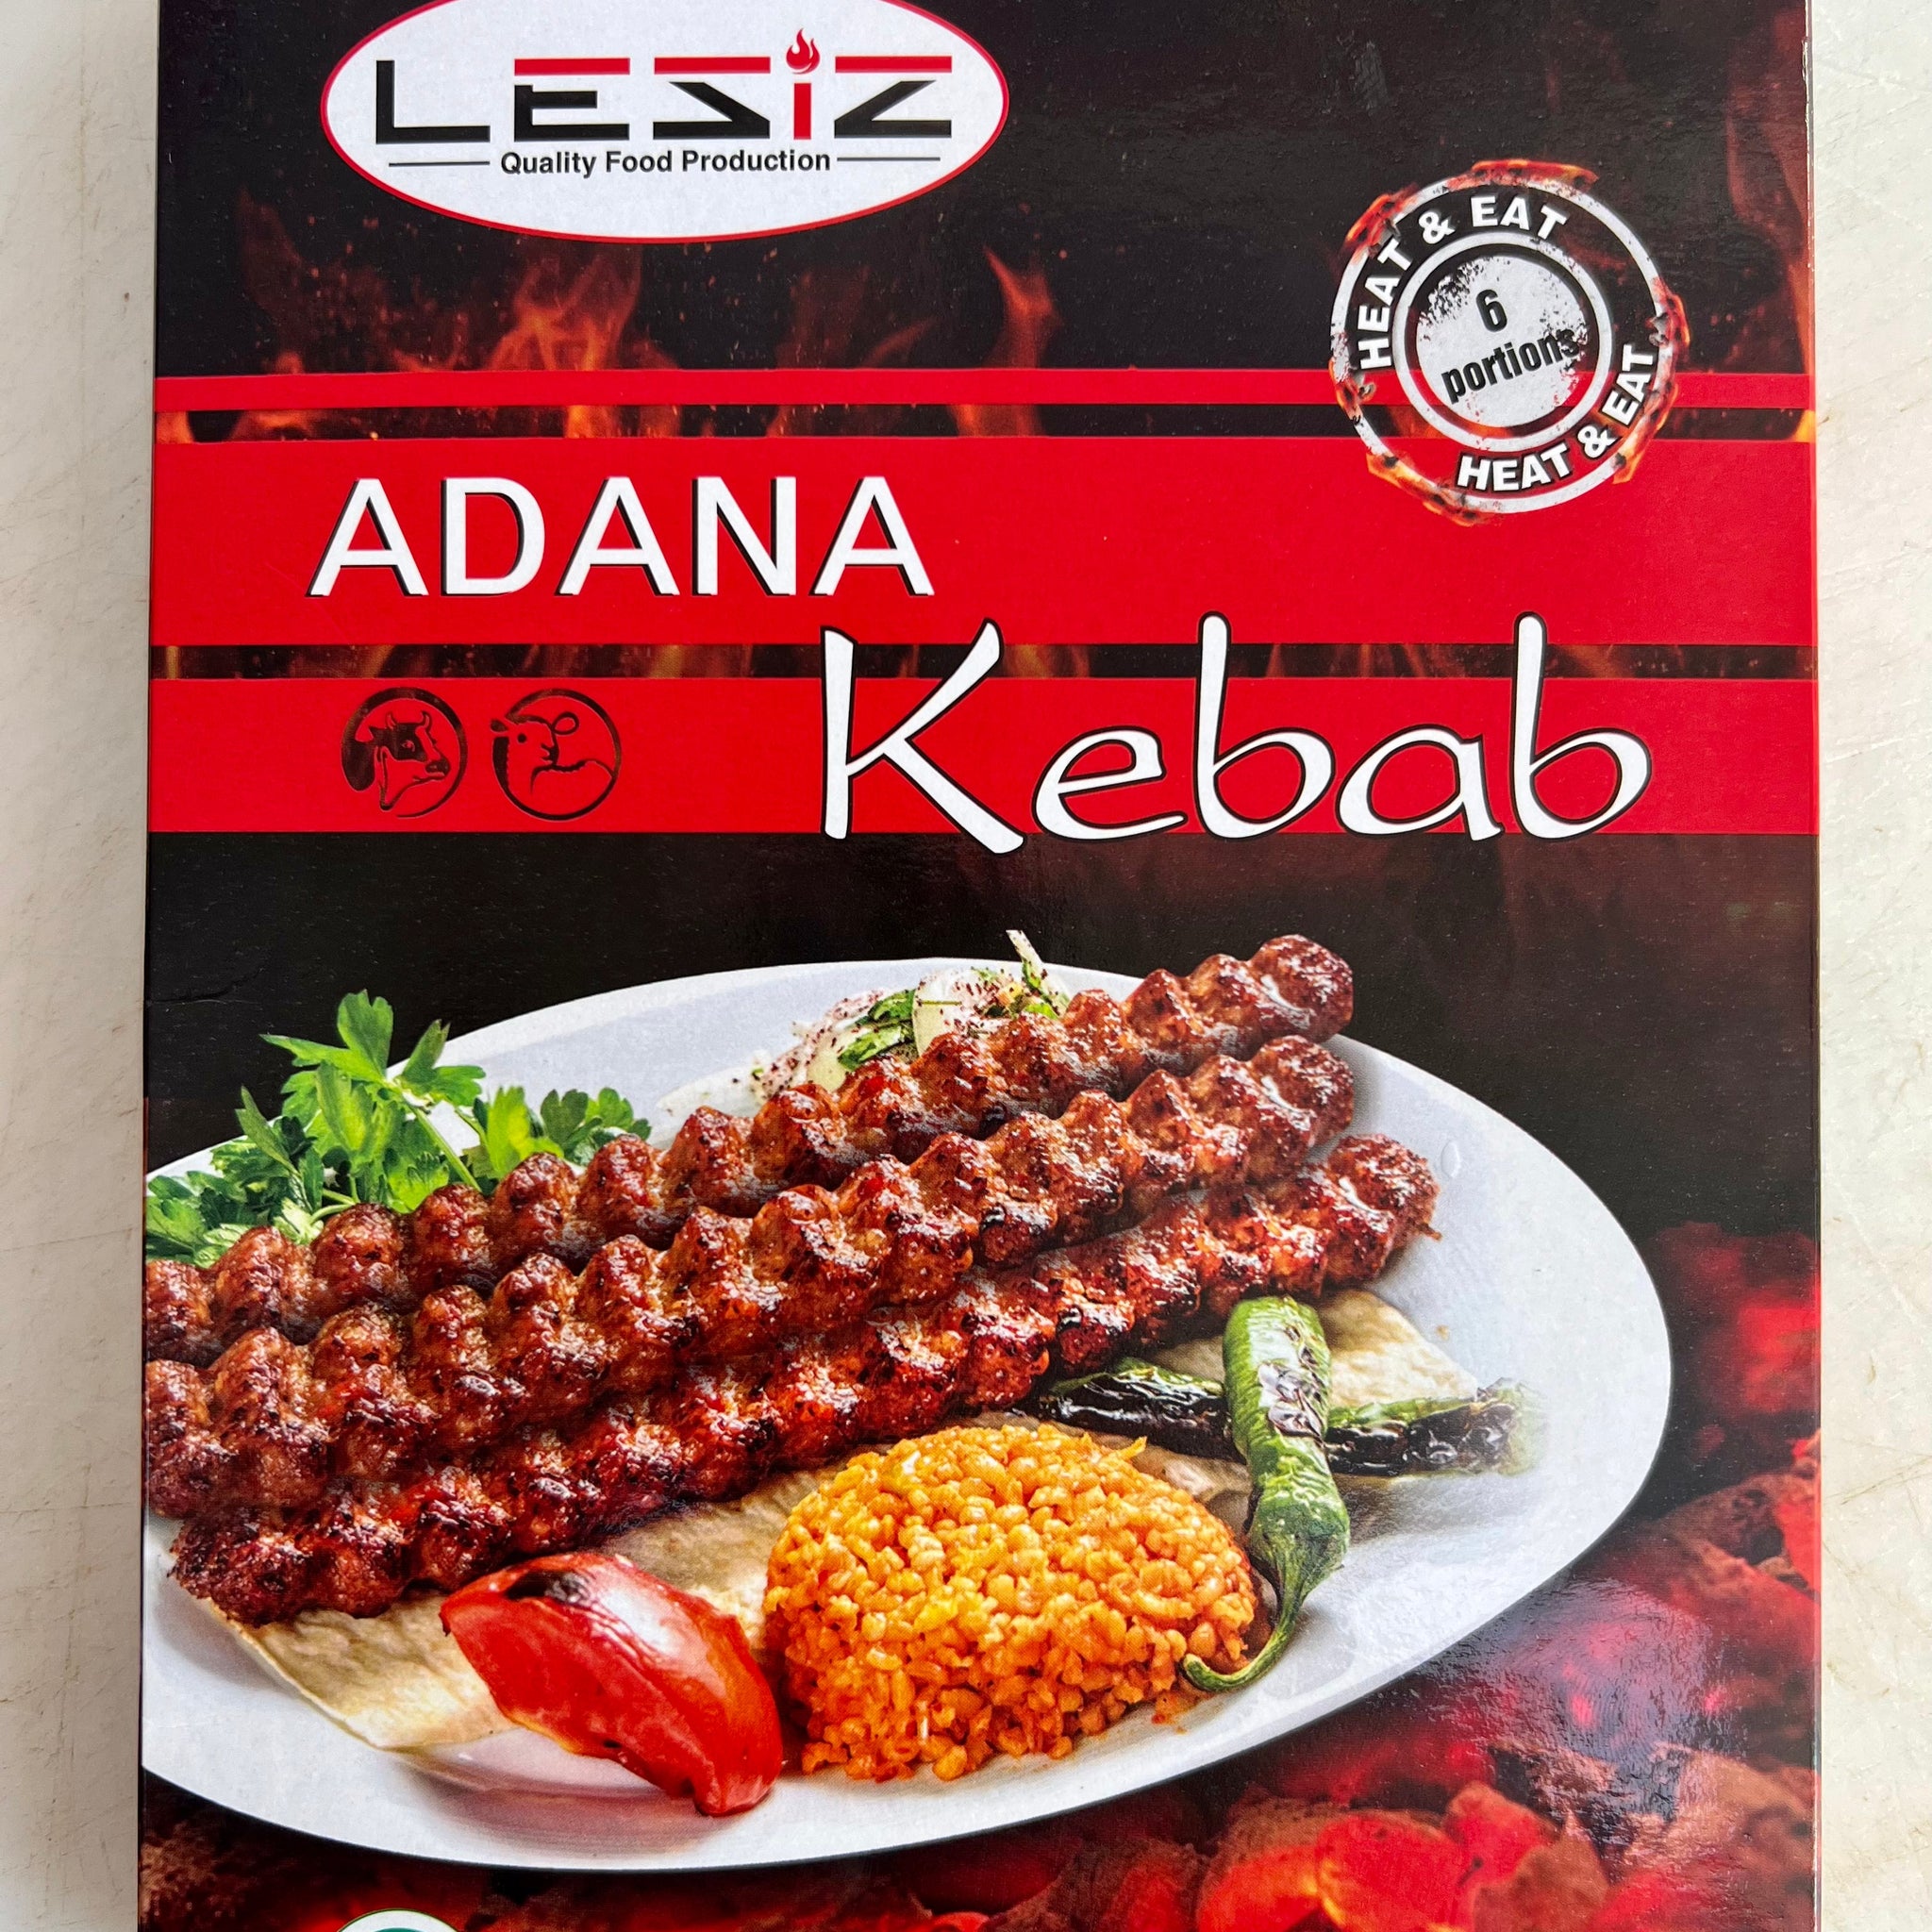 Heat&Eat Adana Kebab Frozen 380 g 6 pcs - Leziz